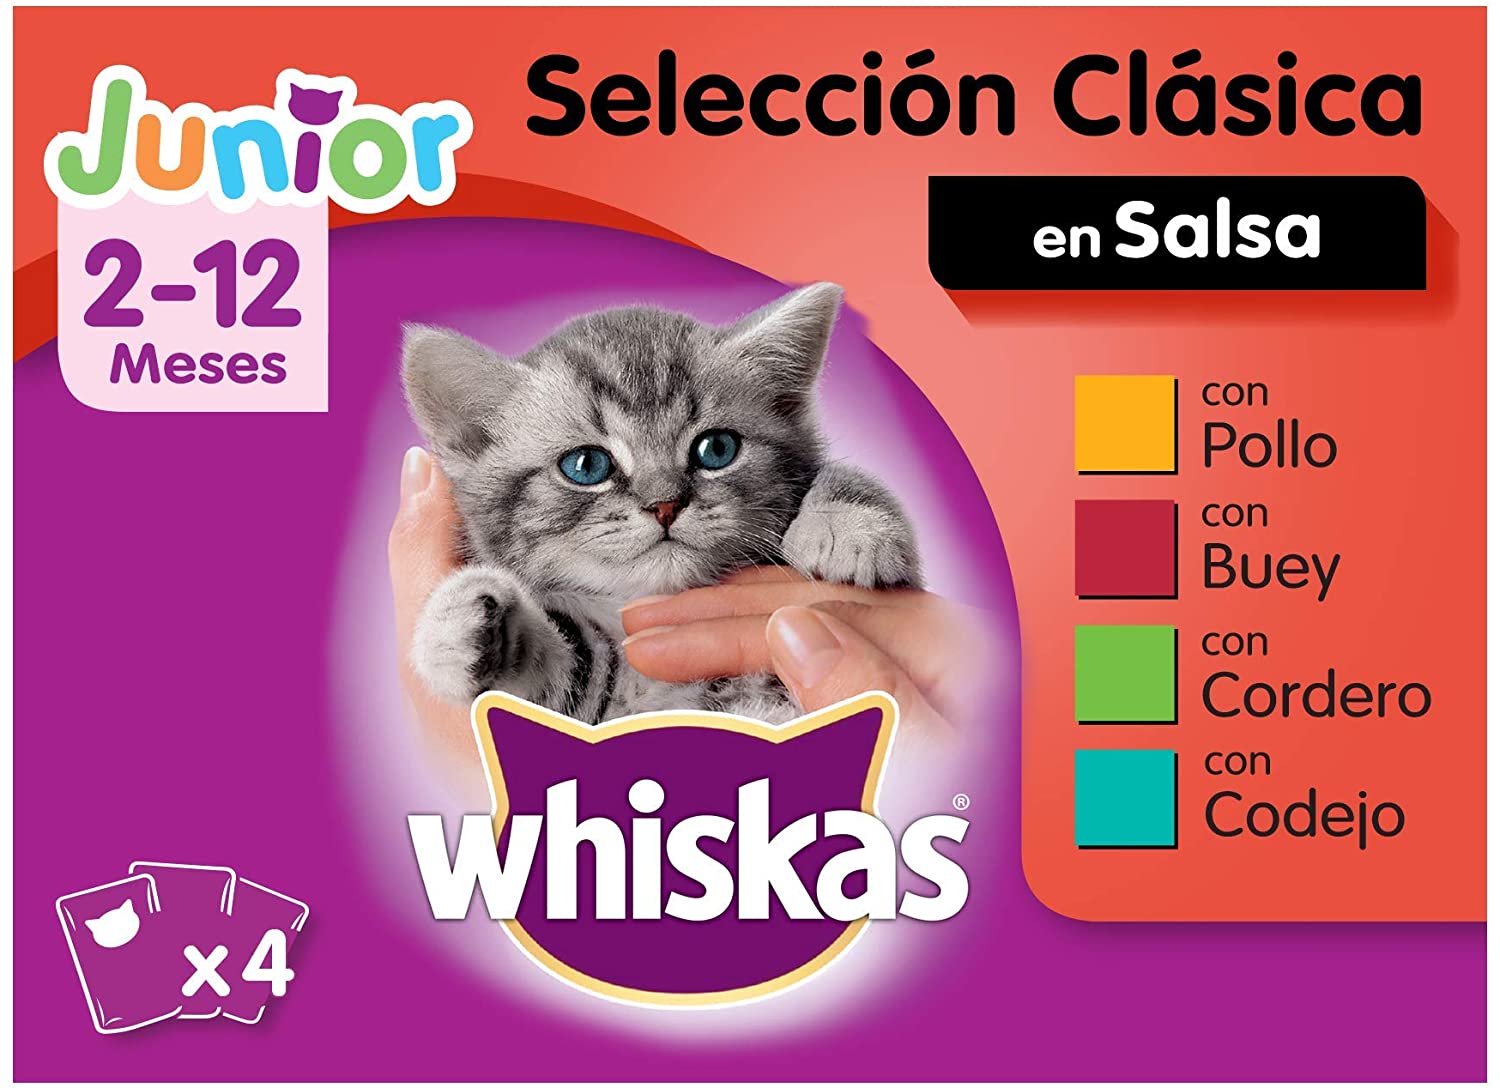  Whiskas Multipack de 4 bolsitas de 100 g de selección de carnes para gatos junior (Pack de 13) 